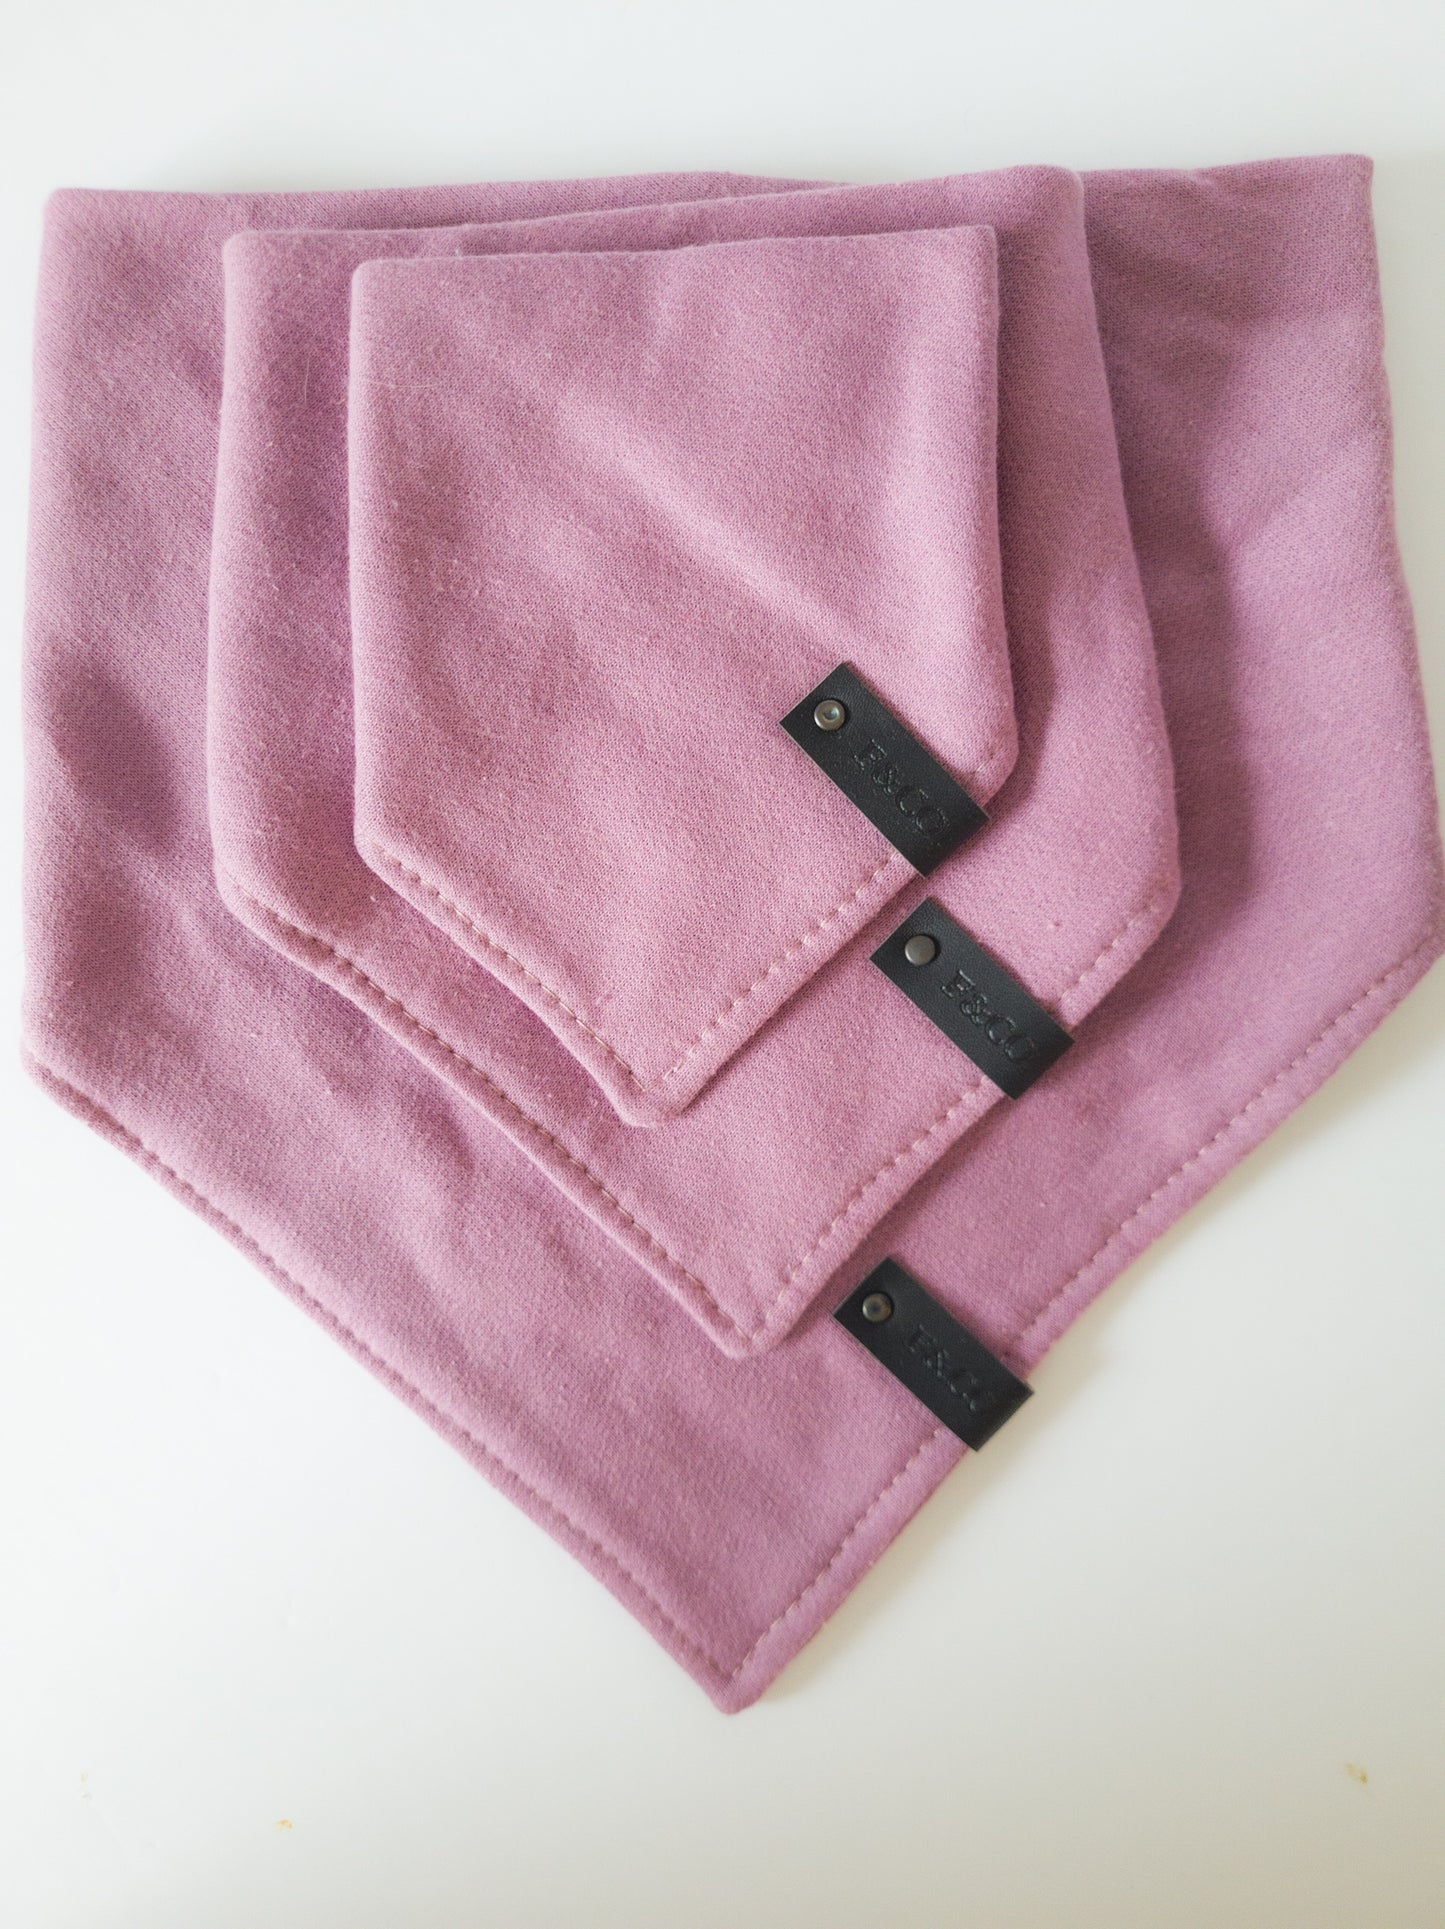 Différentes grandeurs de bandanas de coton ouaté de couleur violet rosé. Étiquettes de cuir noir végan.